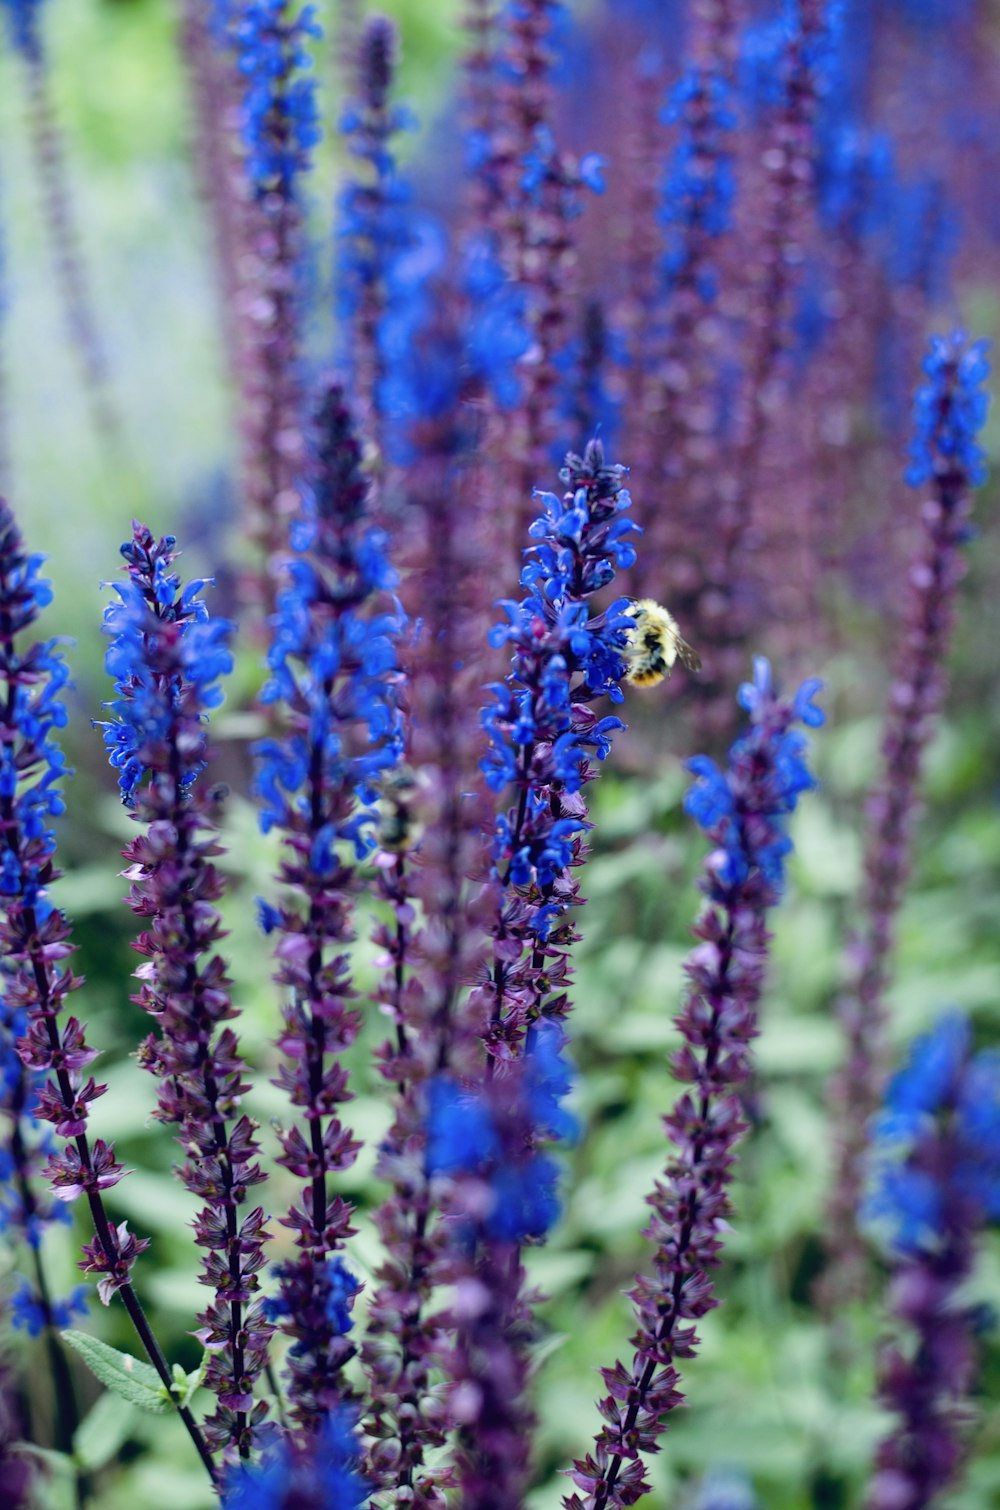 a bee is sitting on a purple flower